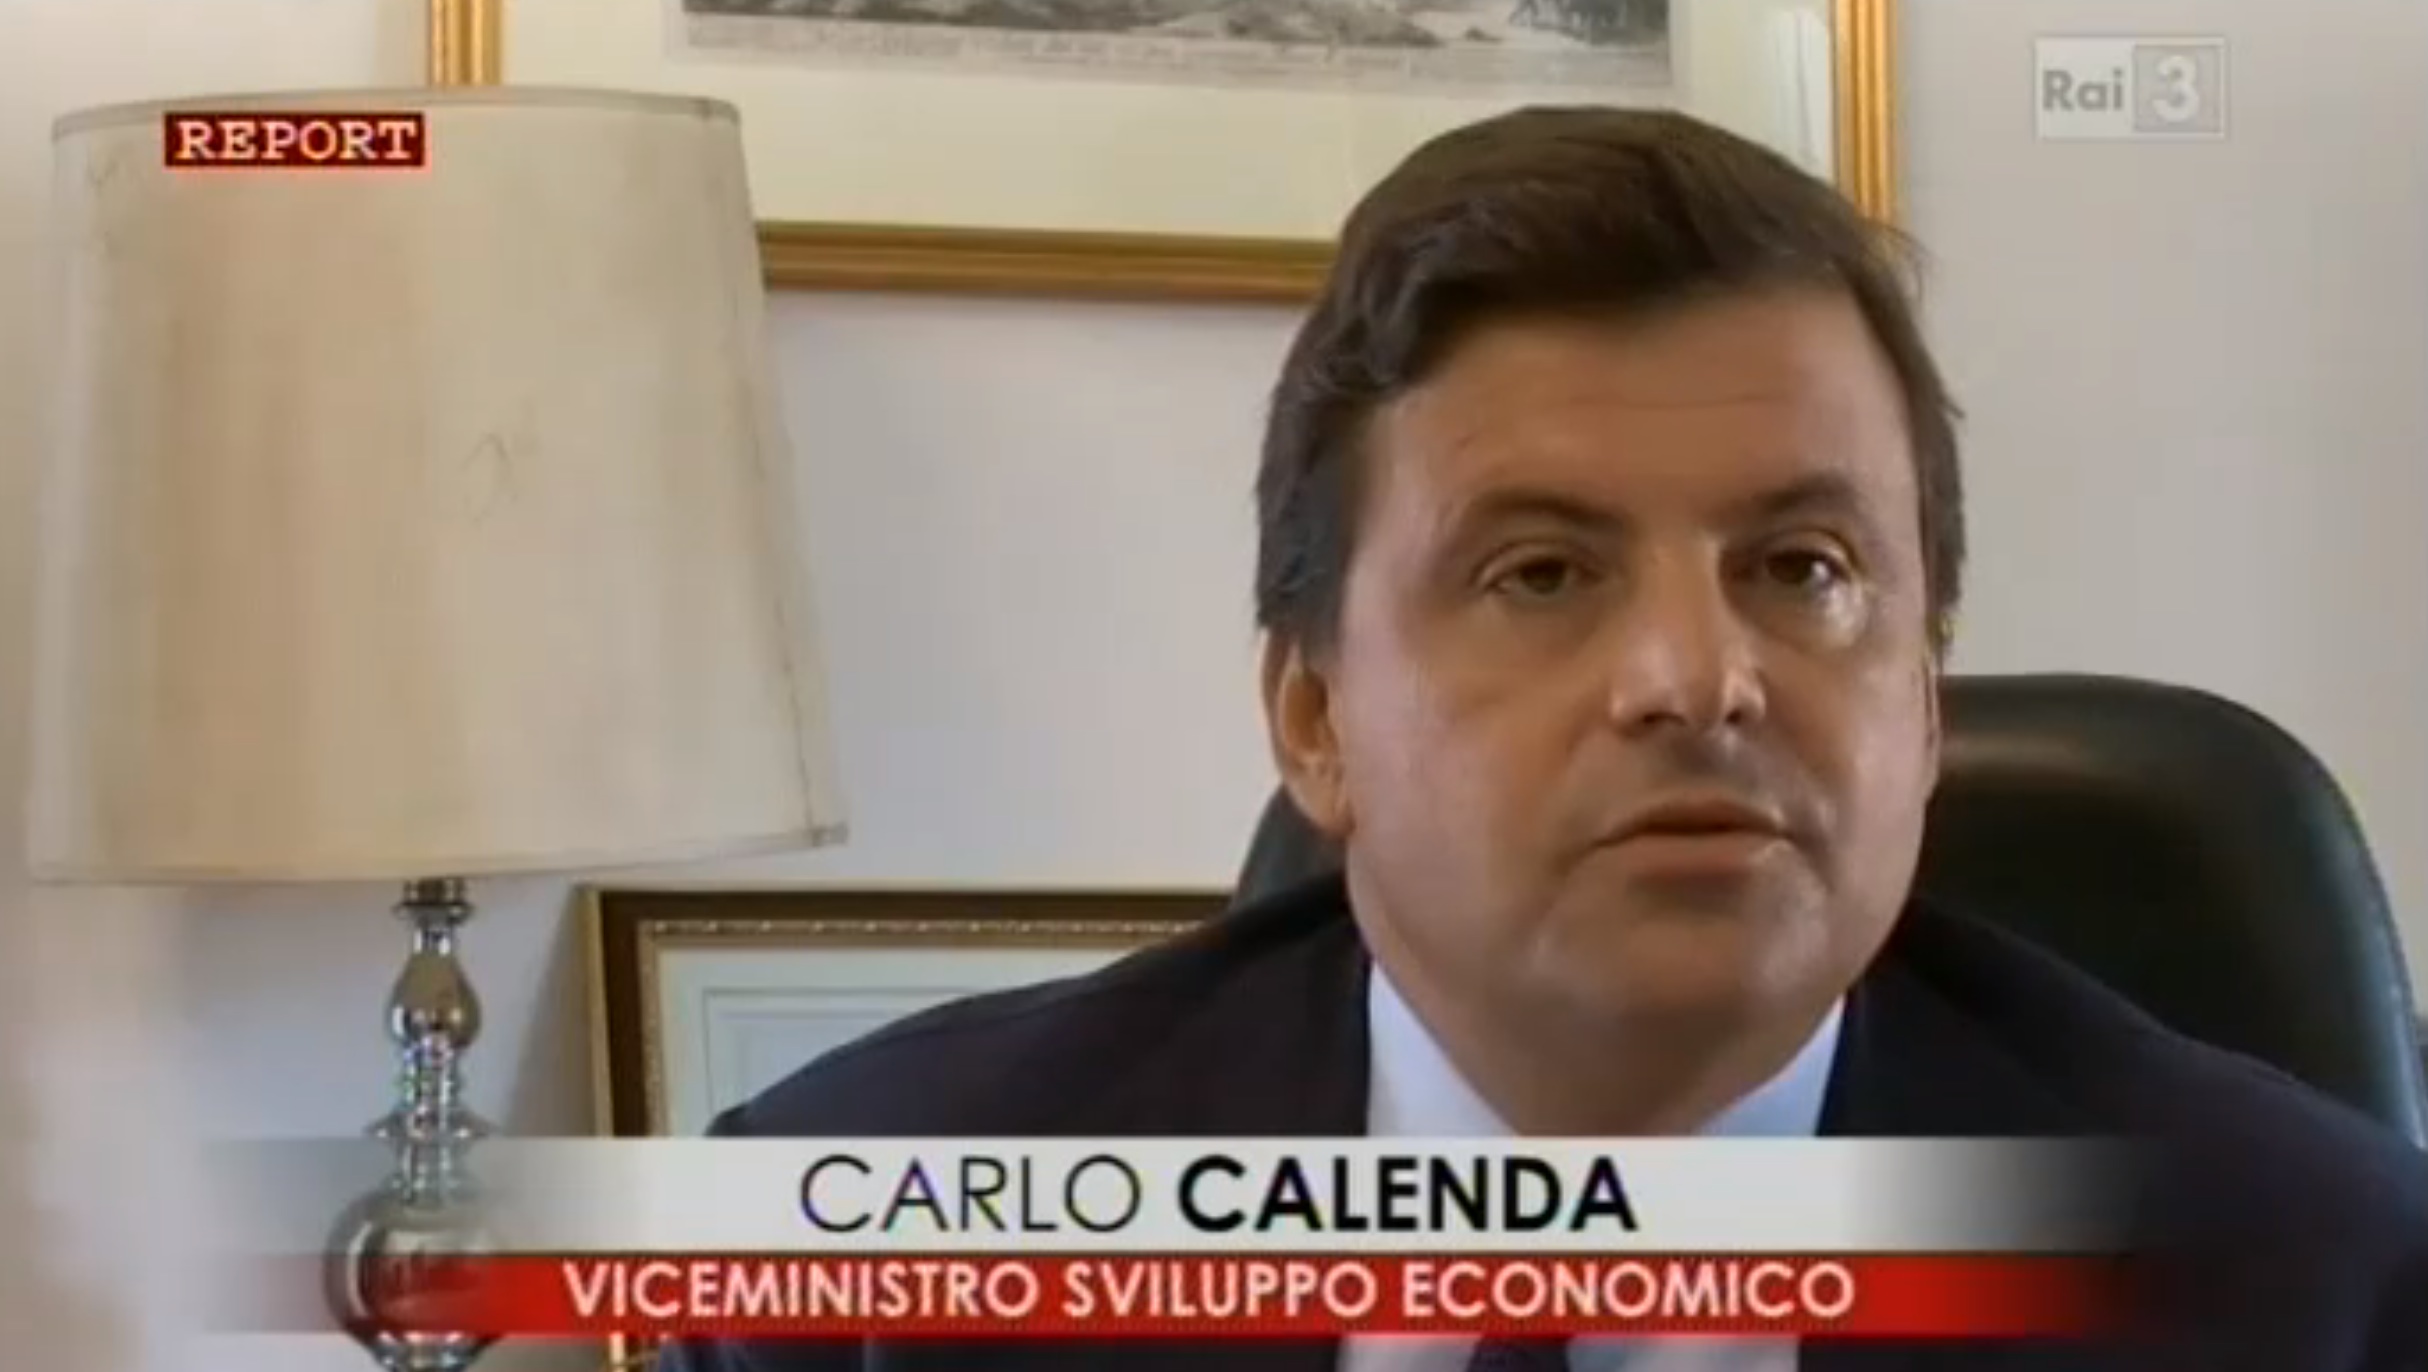 Carlo Calenda Report